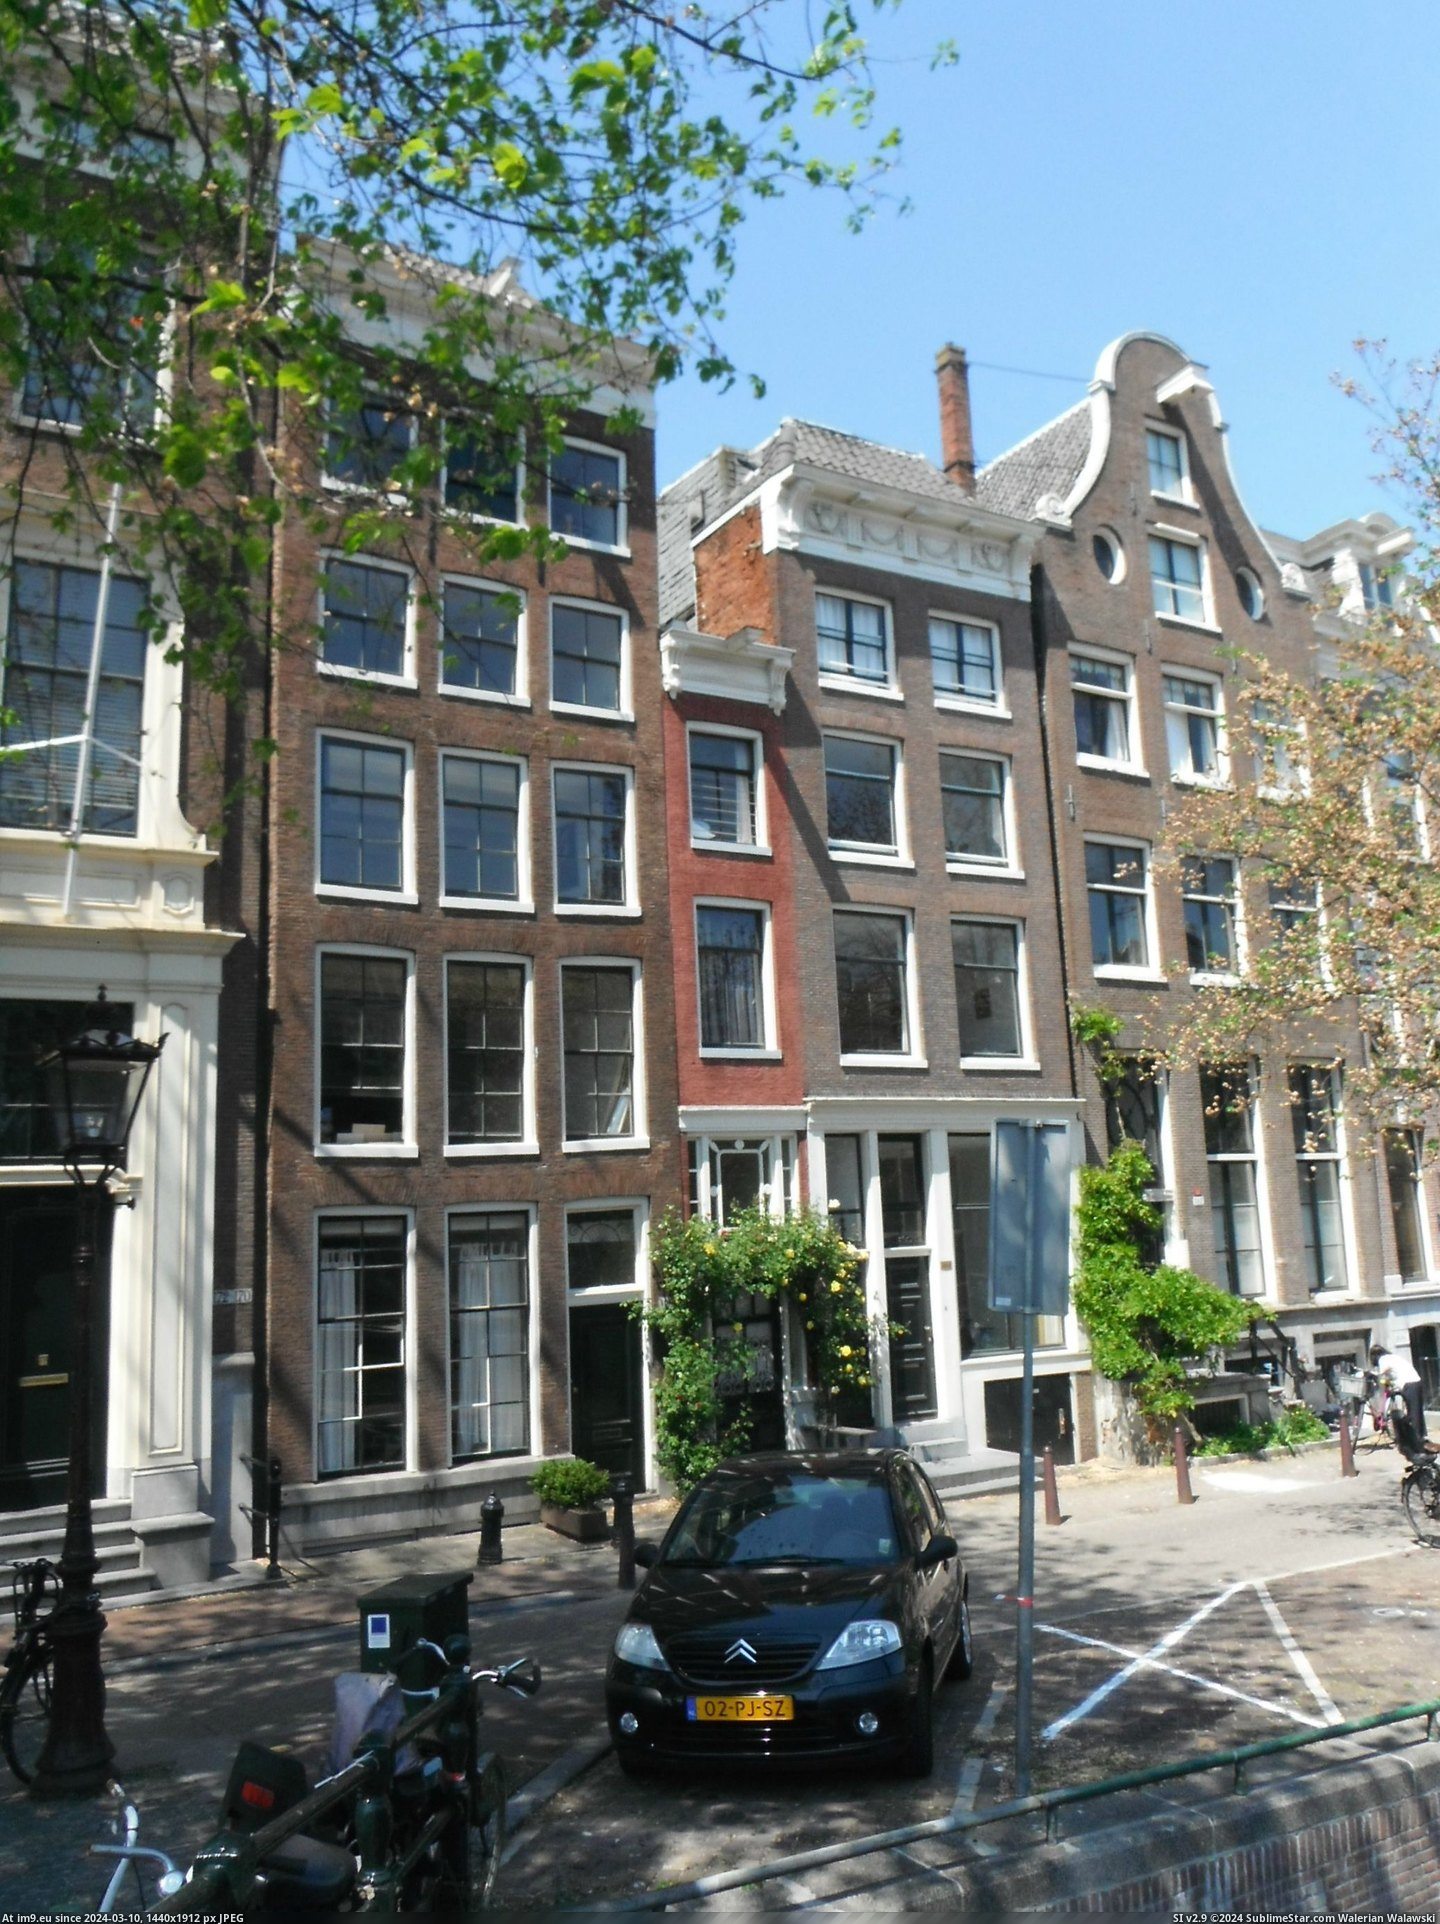 #House #Narrowest #Amsterdam [Mildlyinteresting] The narrowest house in Amsterdam Pic. (Bild von album My r/MILDLYINTERESTING favs))